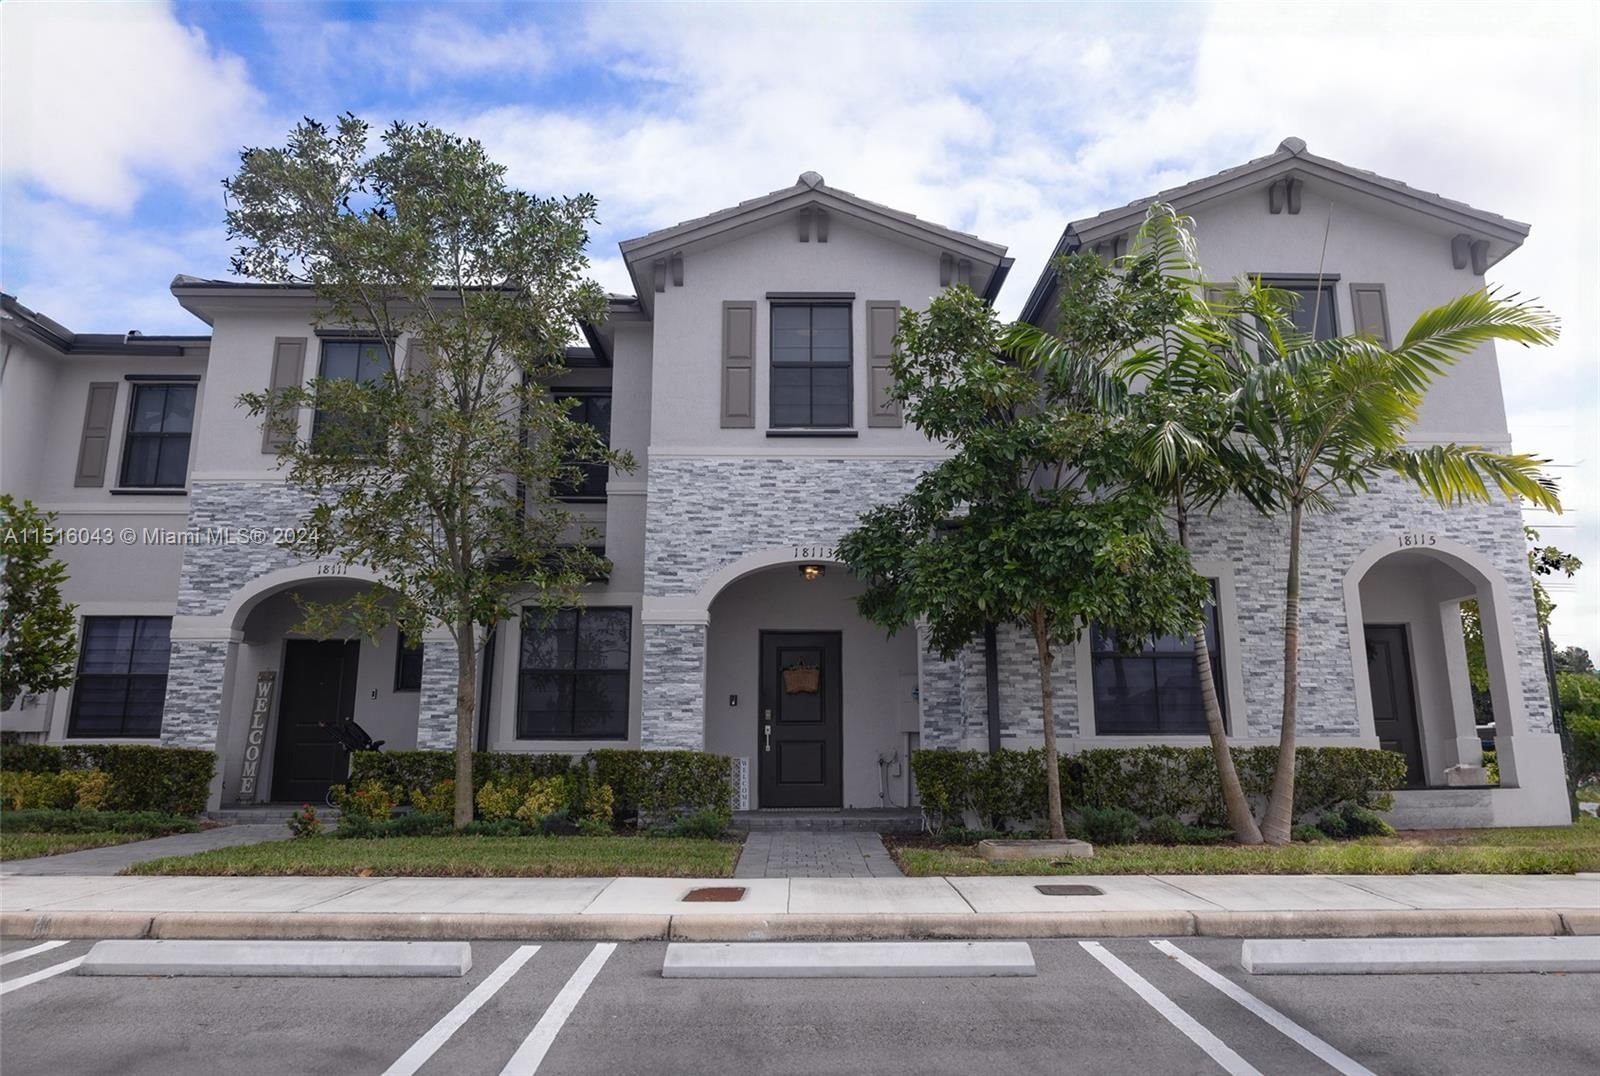 Real estate property located at 18113 147th Ct, Miami-Dade County, BOWTIE SUBDIVISION, Miami, FL